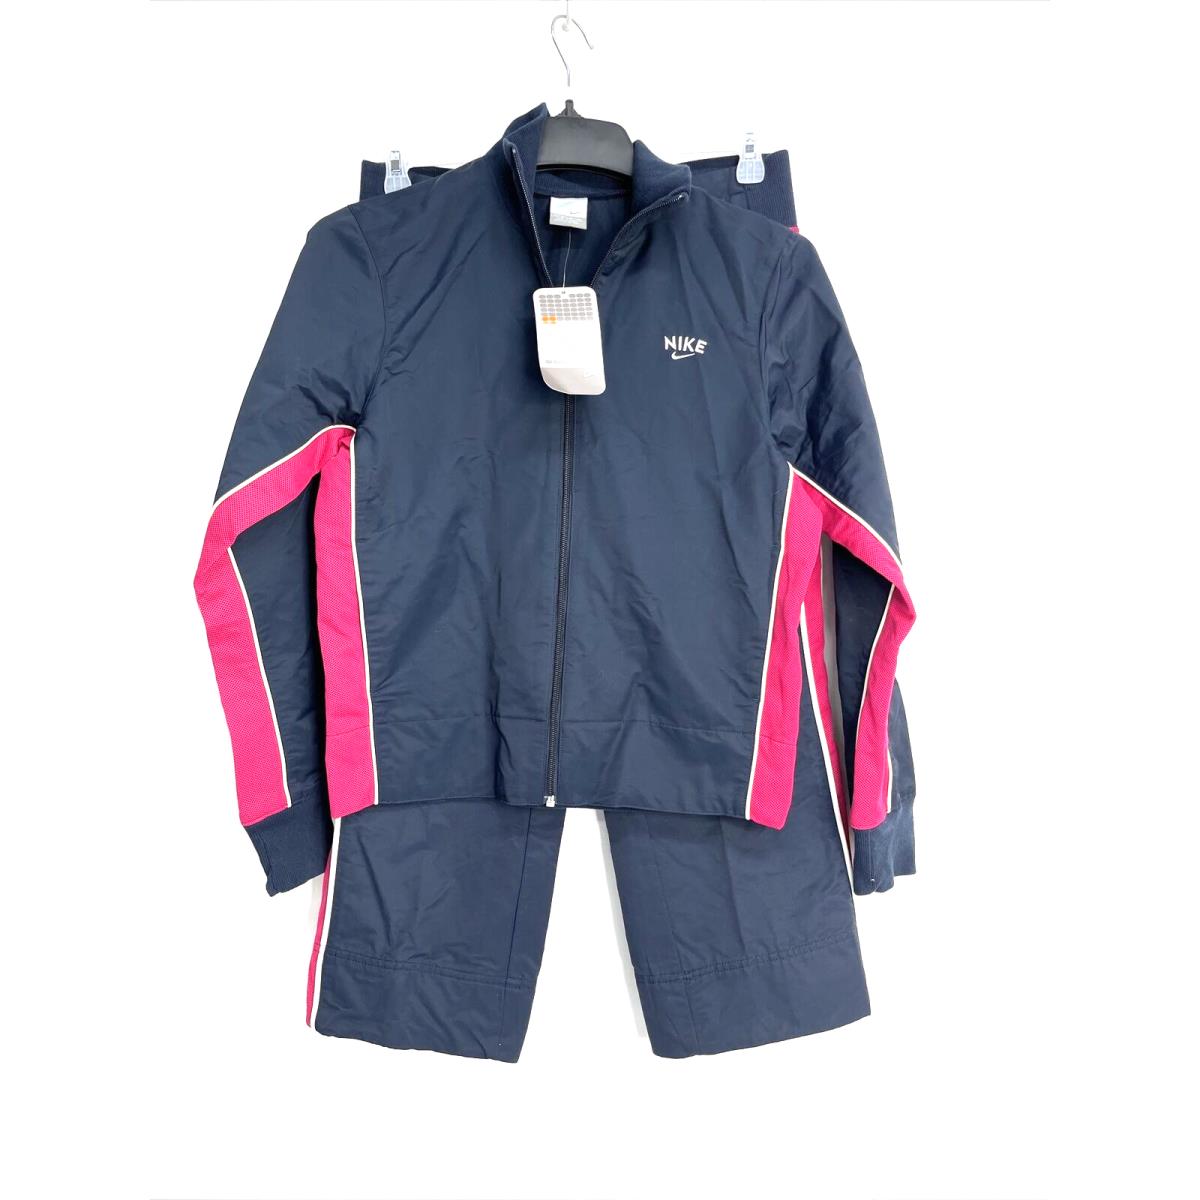 Nike Women`s Windbreaker Track Suit Size Medium 8/10 Blue/pink 2004